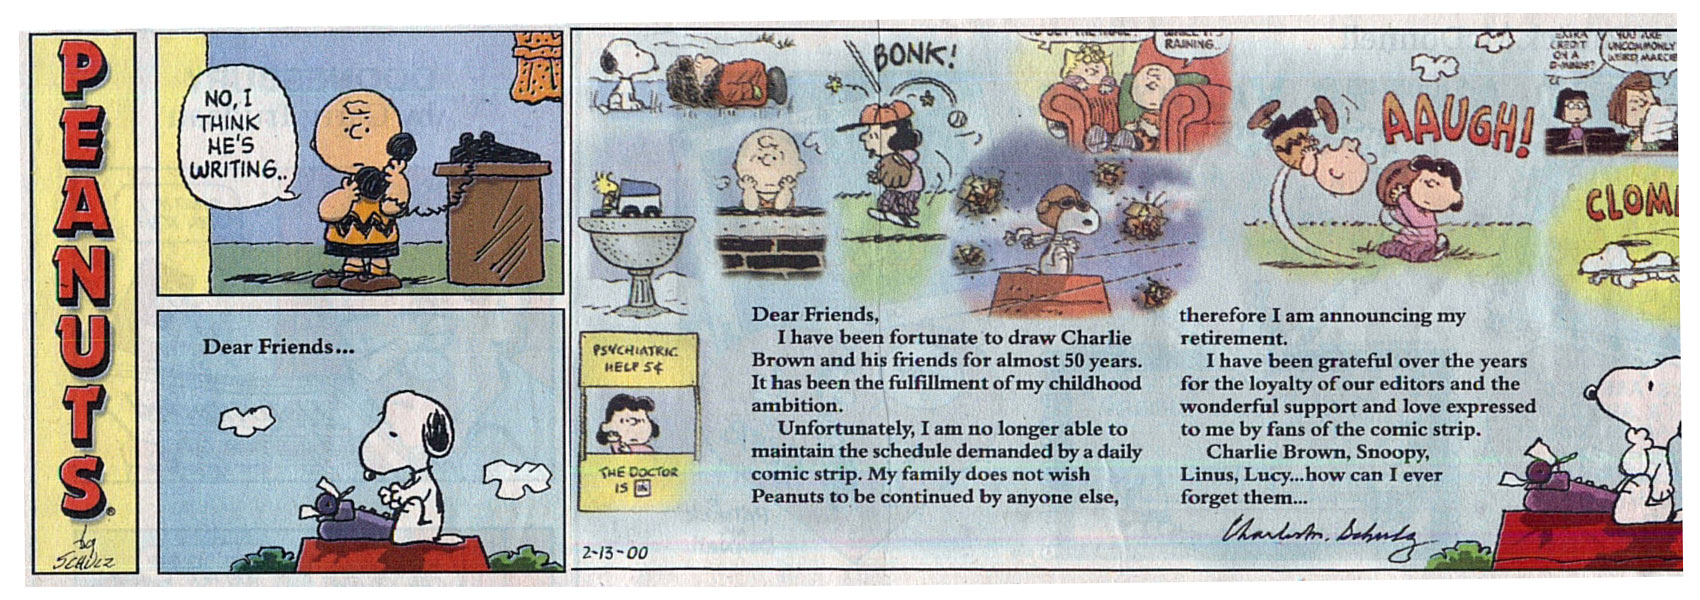 Peanuts, l'ultima striscia a fumetti